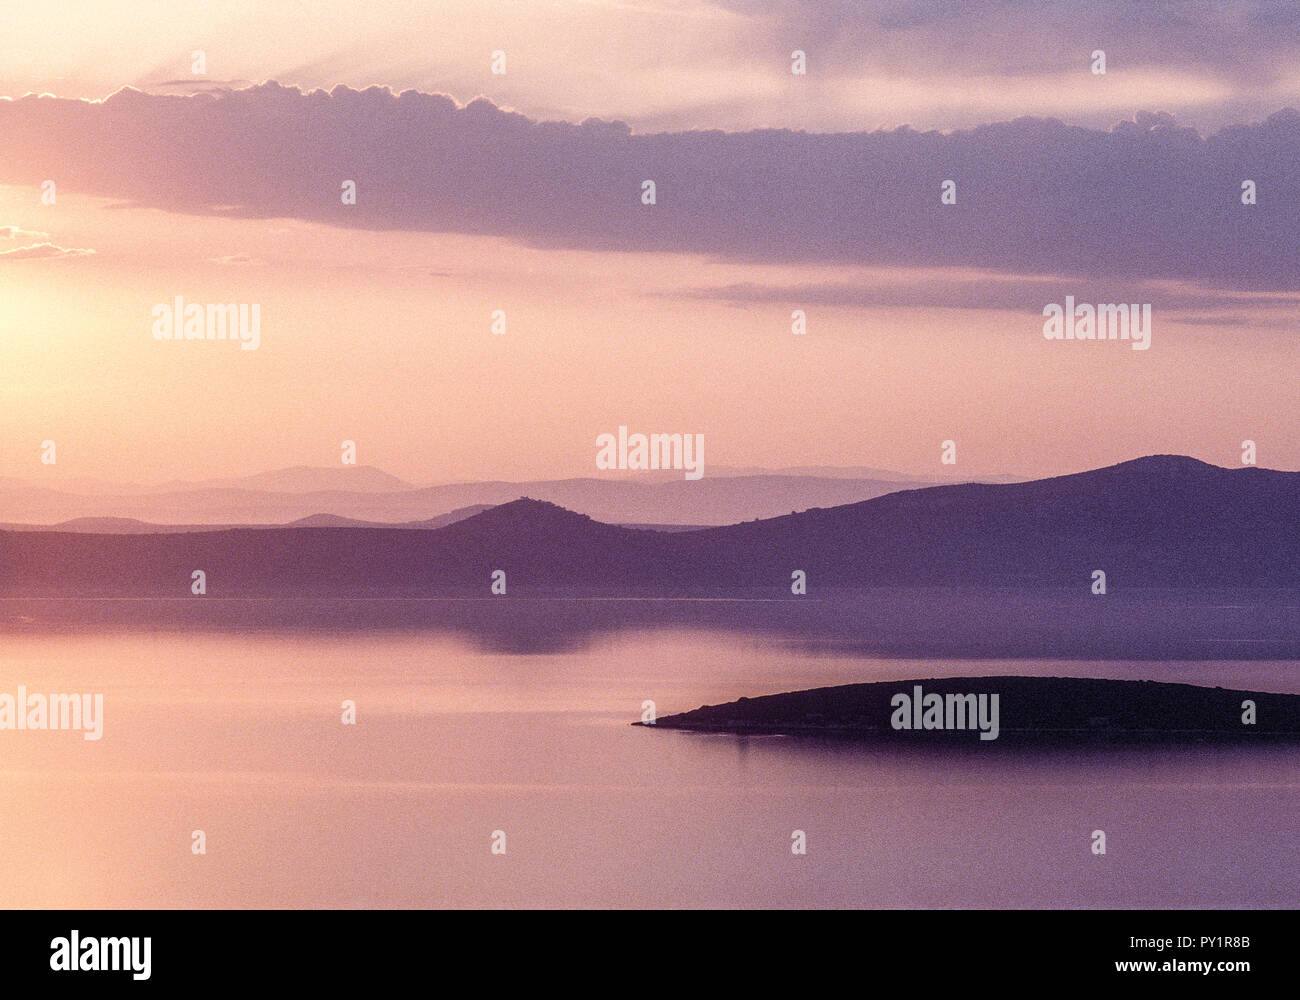 Sonnenuntergang am Meer, Berge, Dalmatien, Kroatien Stock Photo